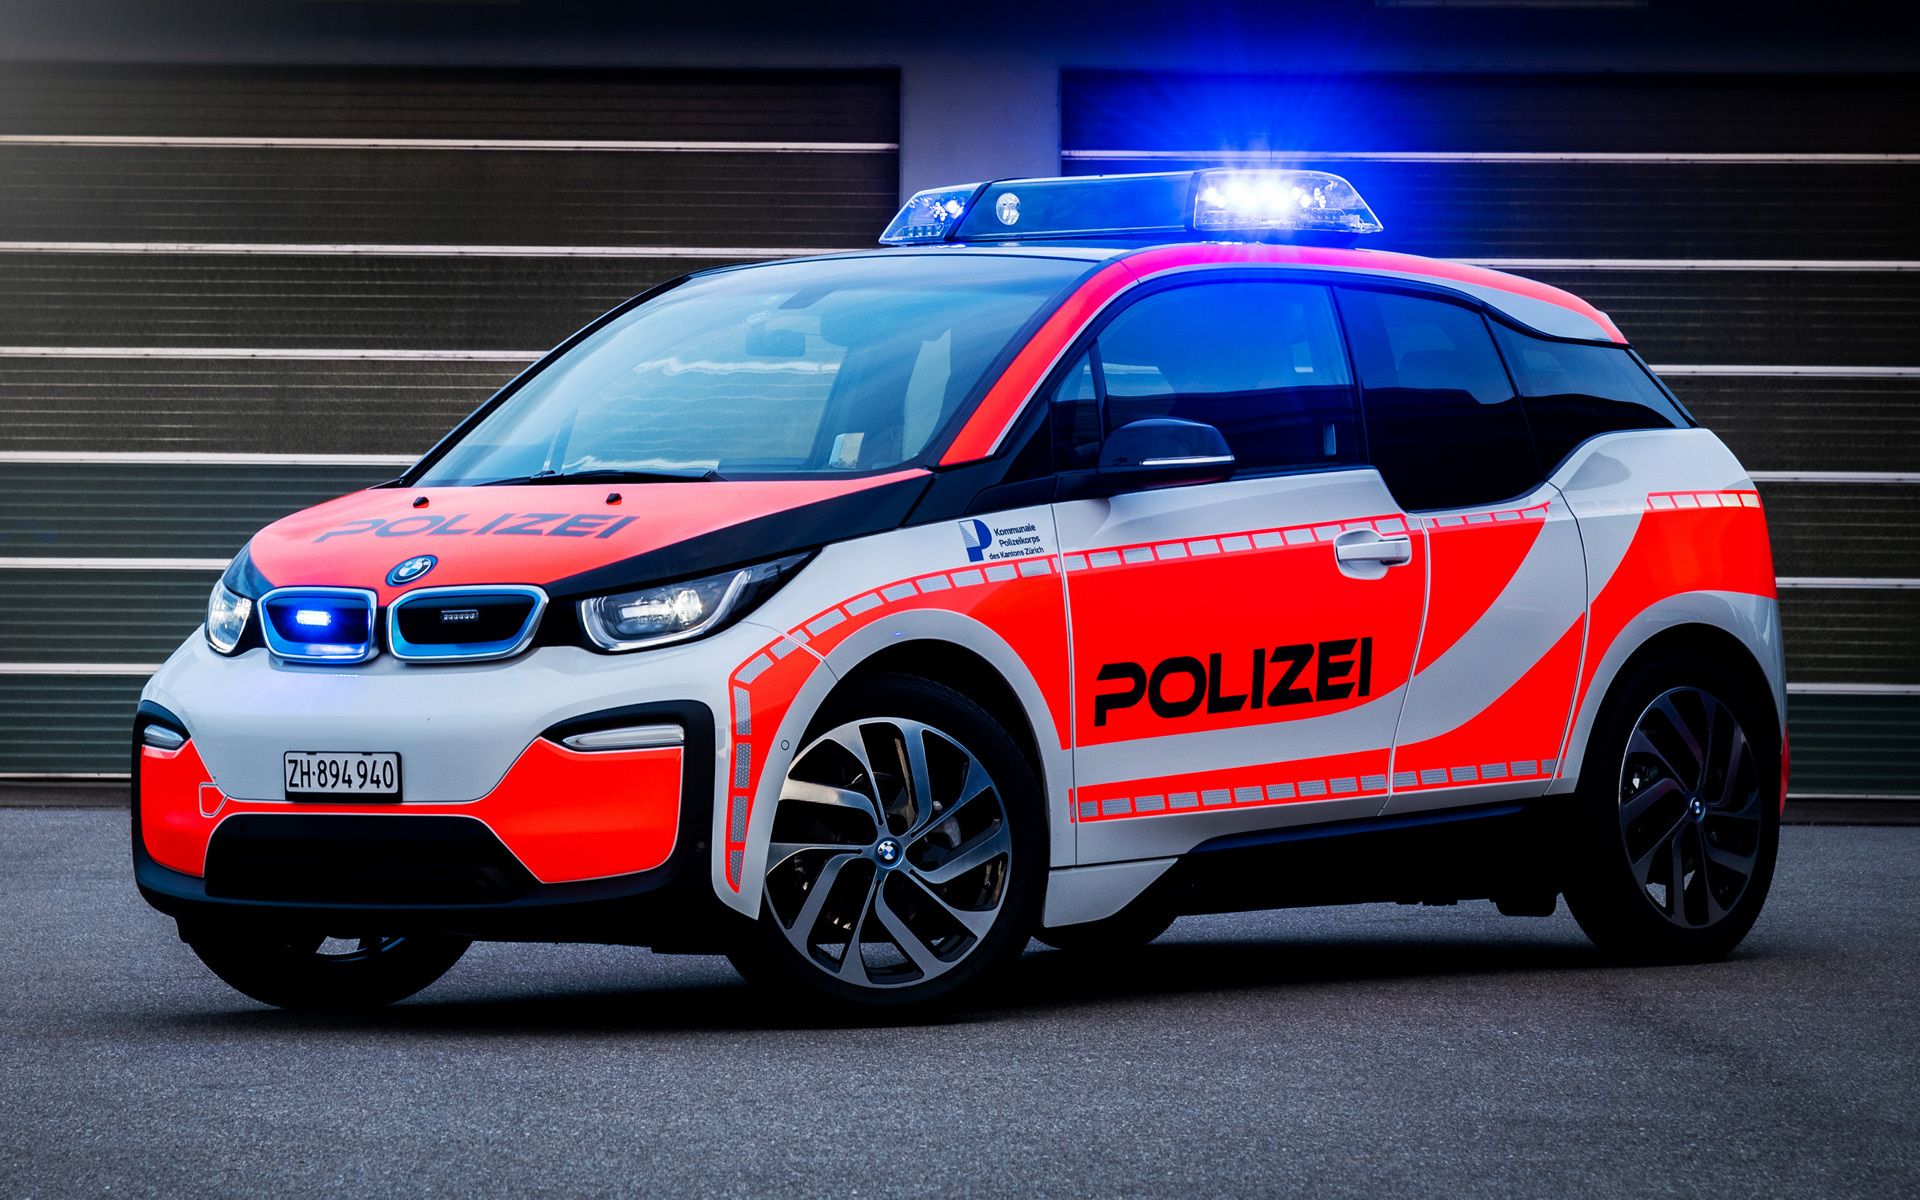 BMW i3 Polizei and HD Image